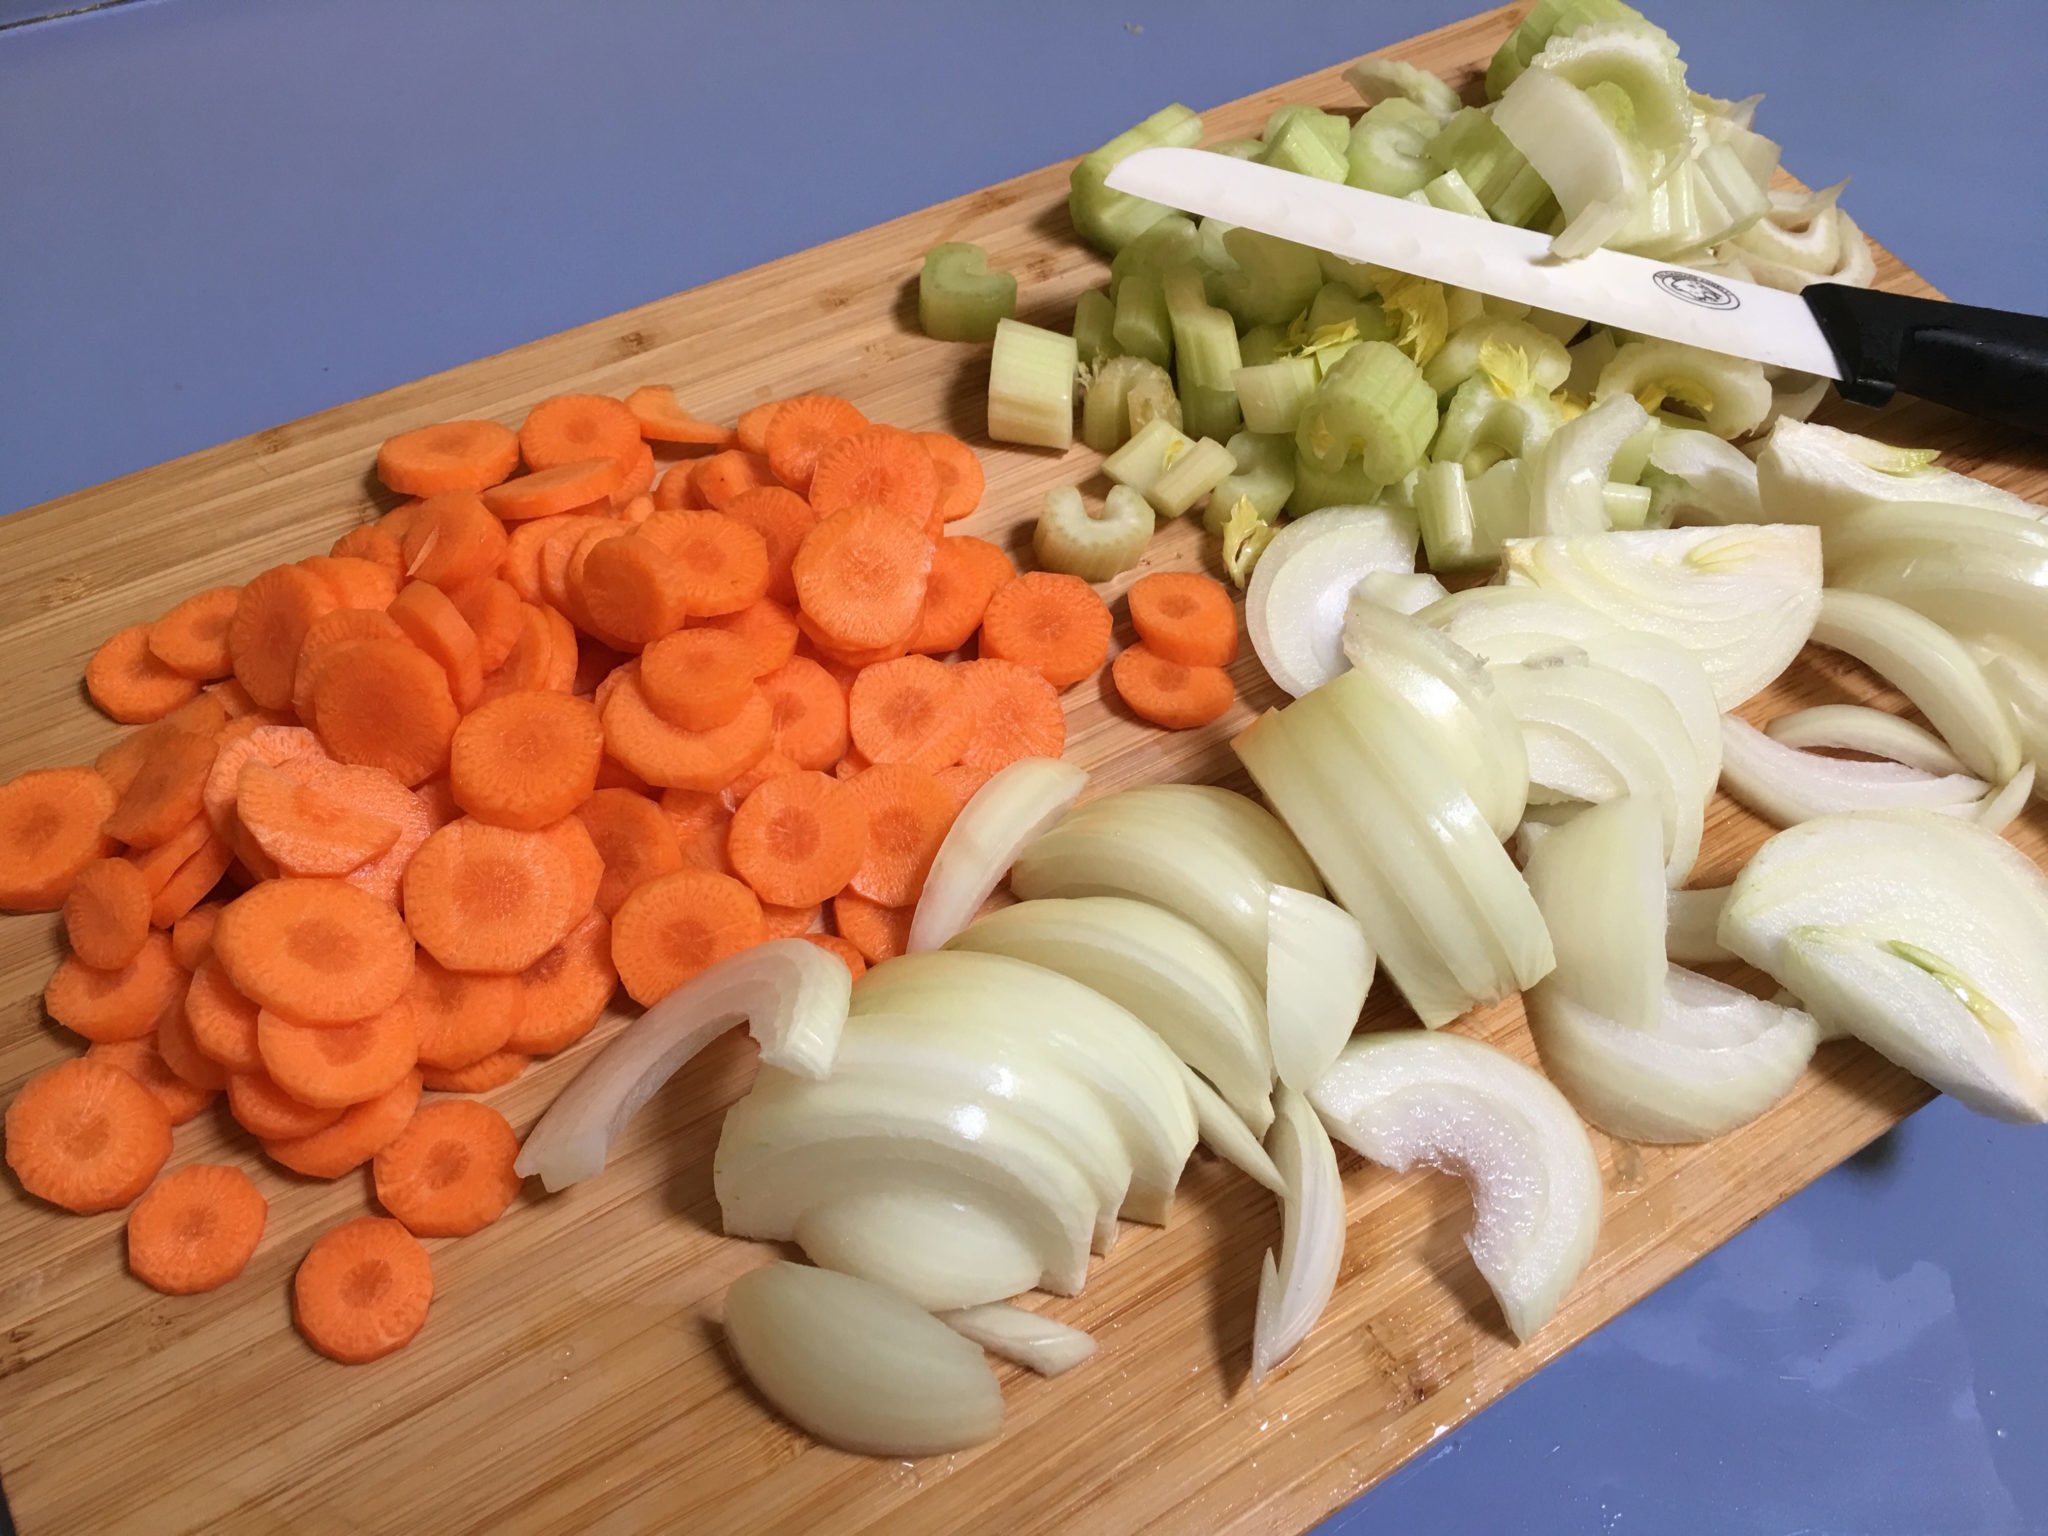 Arrosto morto - cipolle carote e sedano affettati grossi